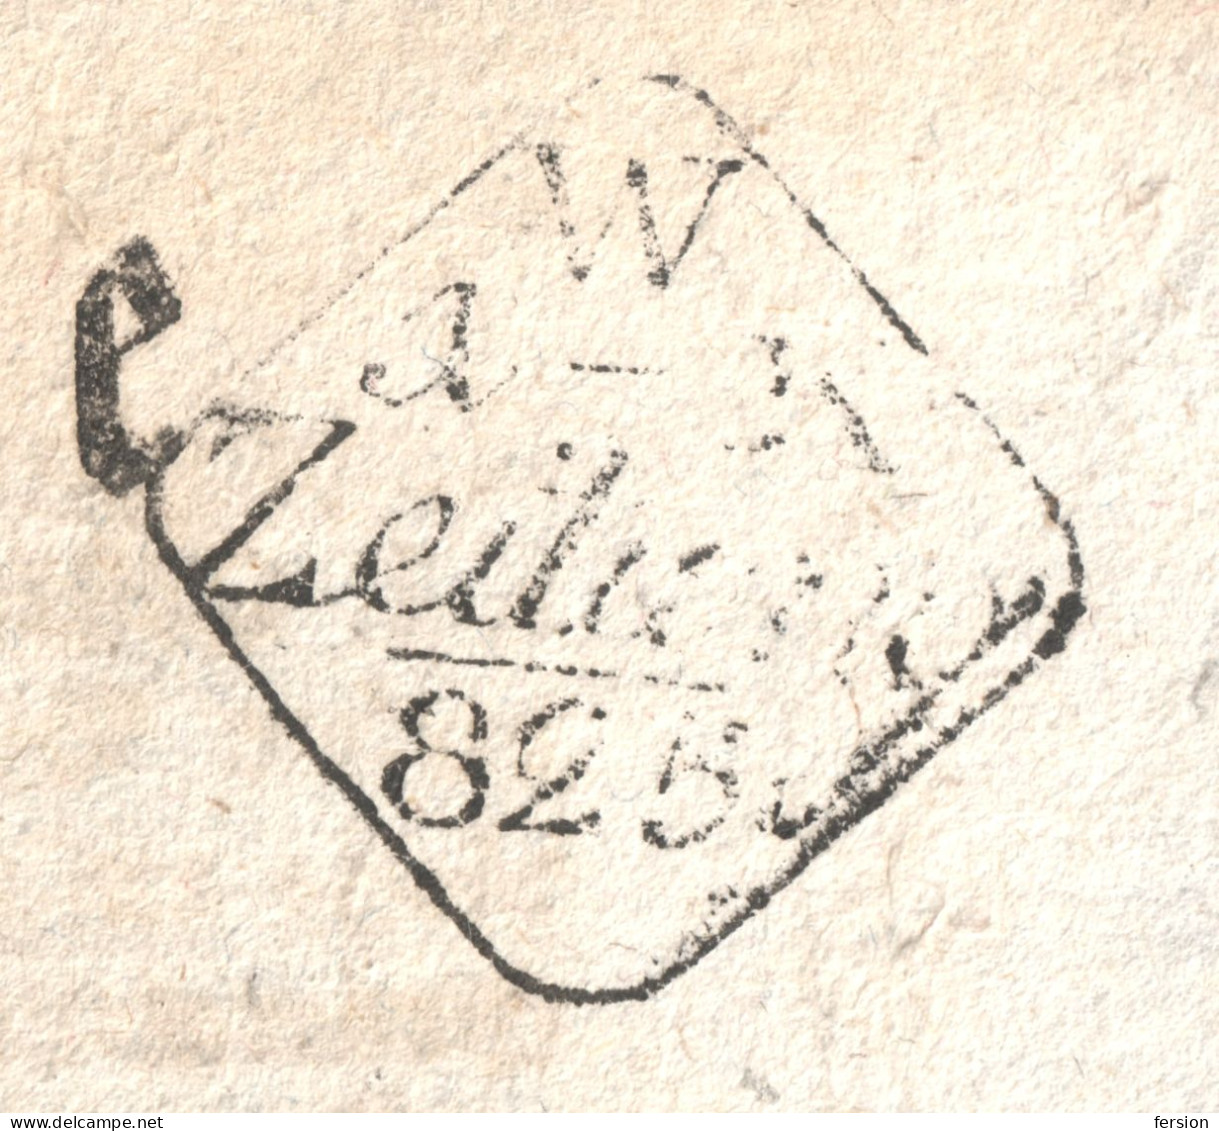 SIGNETTEN POSTMARK STAMP - Zeitungsstempel 1825 Austria - Revenue Tax Stamp - WIENER ZEITUNG Newspaper Signette - Steuermarken